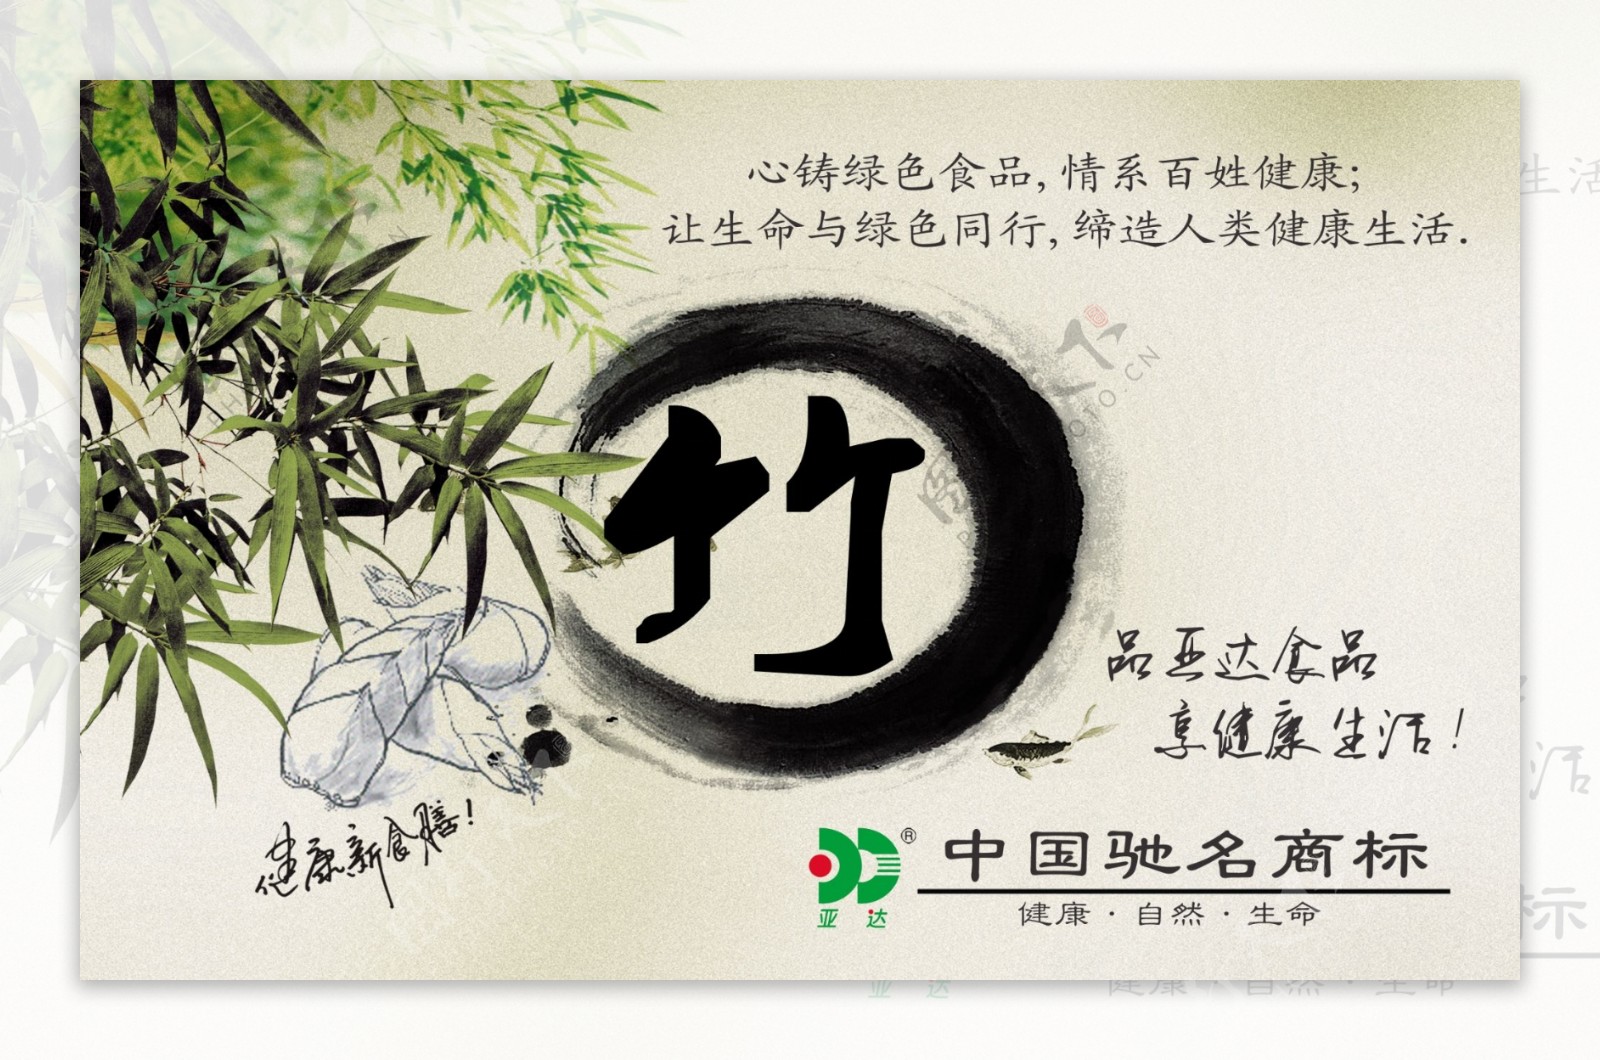 竹文化生活海报图片